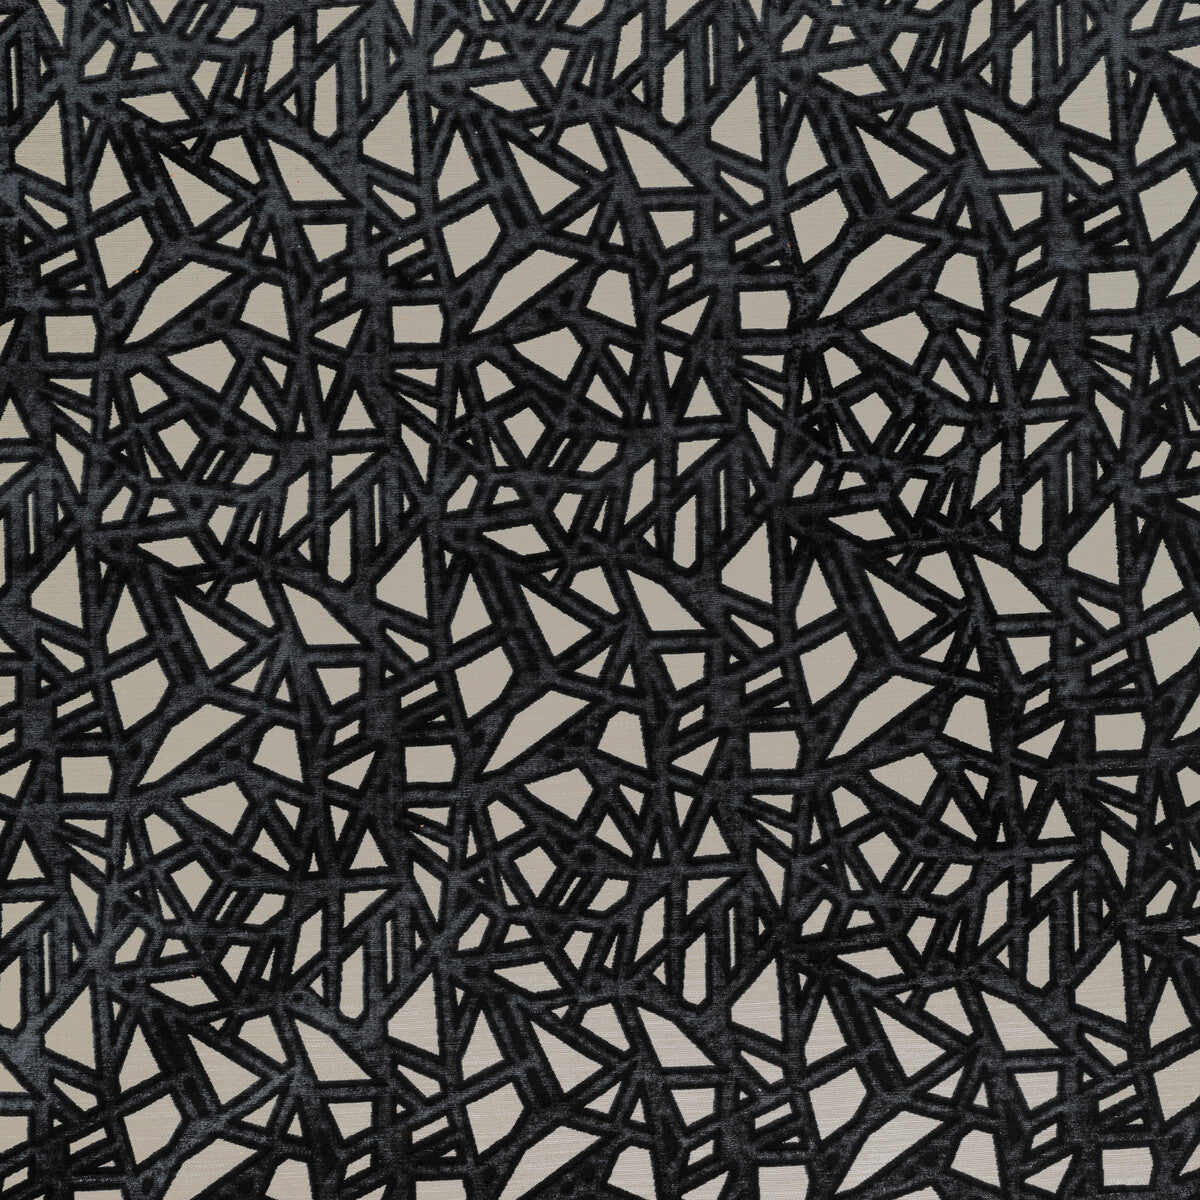 Kravet Design fabric in 36277-8 color - pattern 36277.8.0 - by Kravet Design